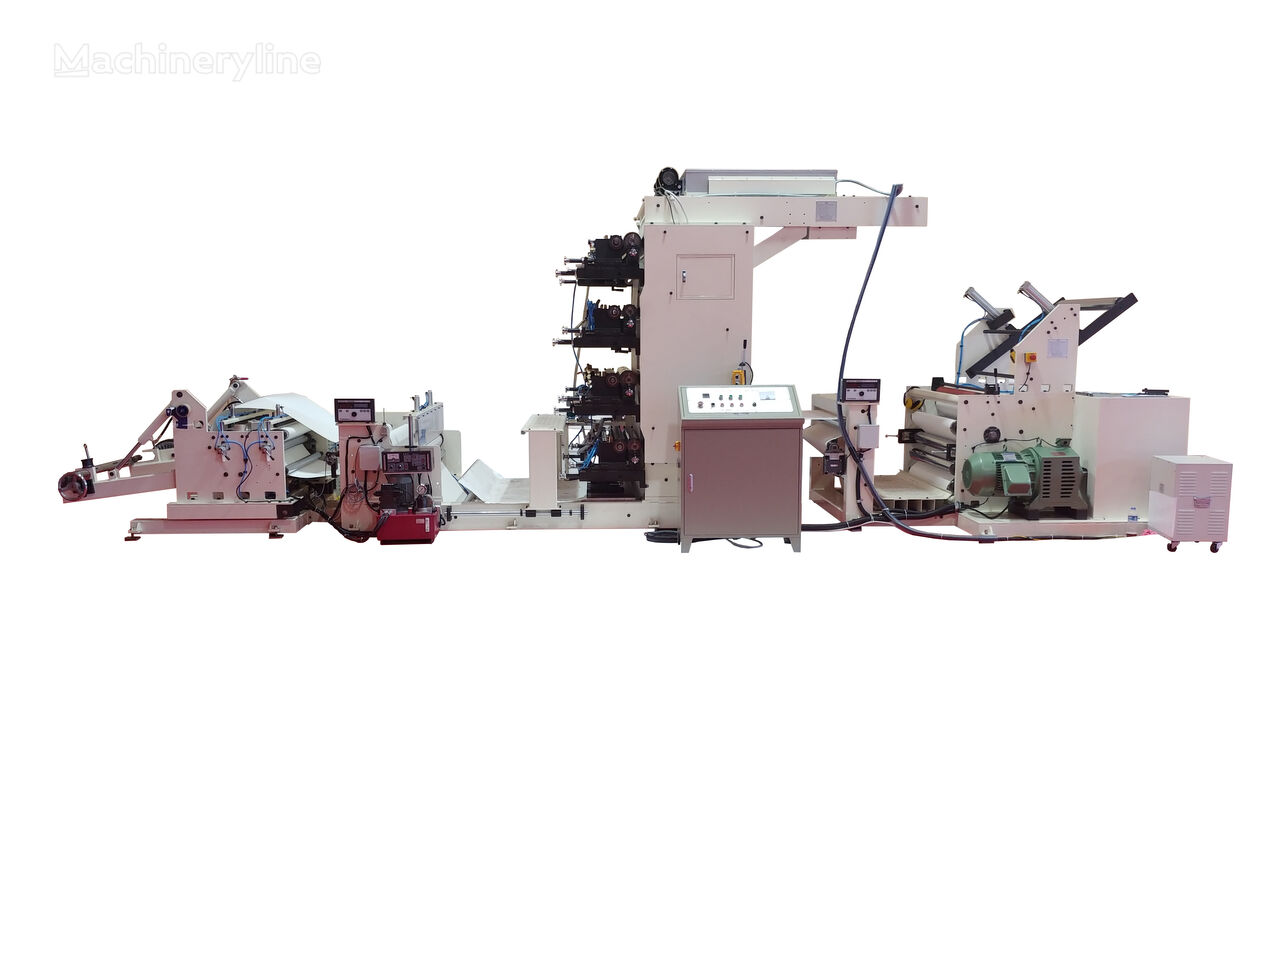 new Kaizenkap Flexo Baskı Makinesi 5 renk flexo printing machine